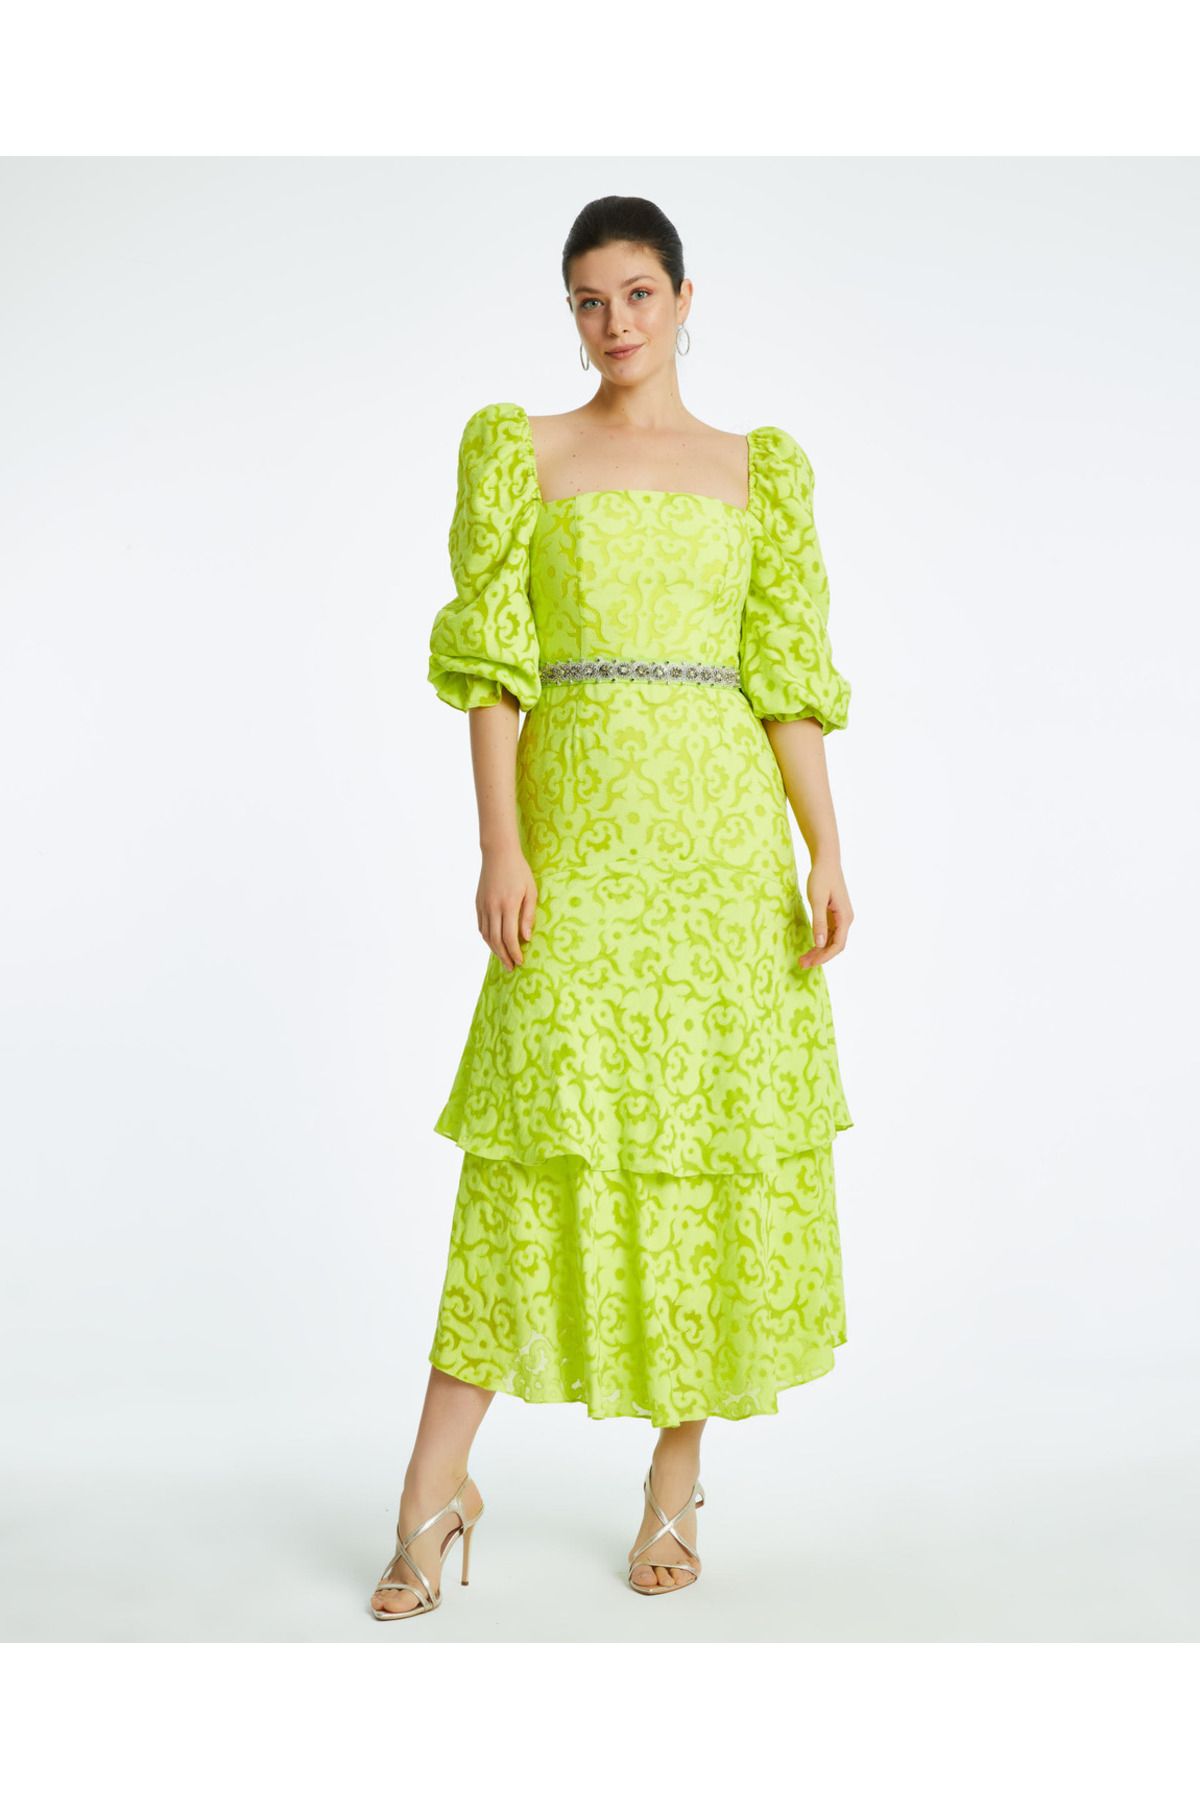 Serpil Serpil Kadın Açık Yeşil Elbise 38376